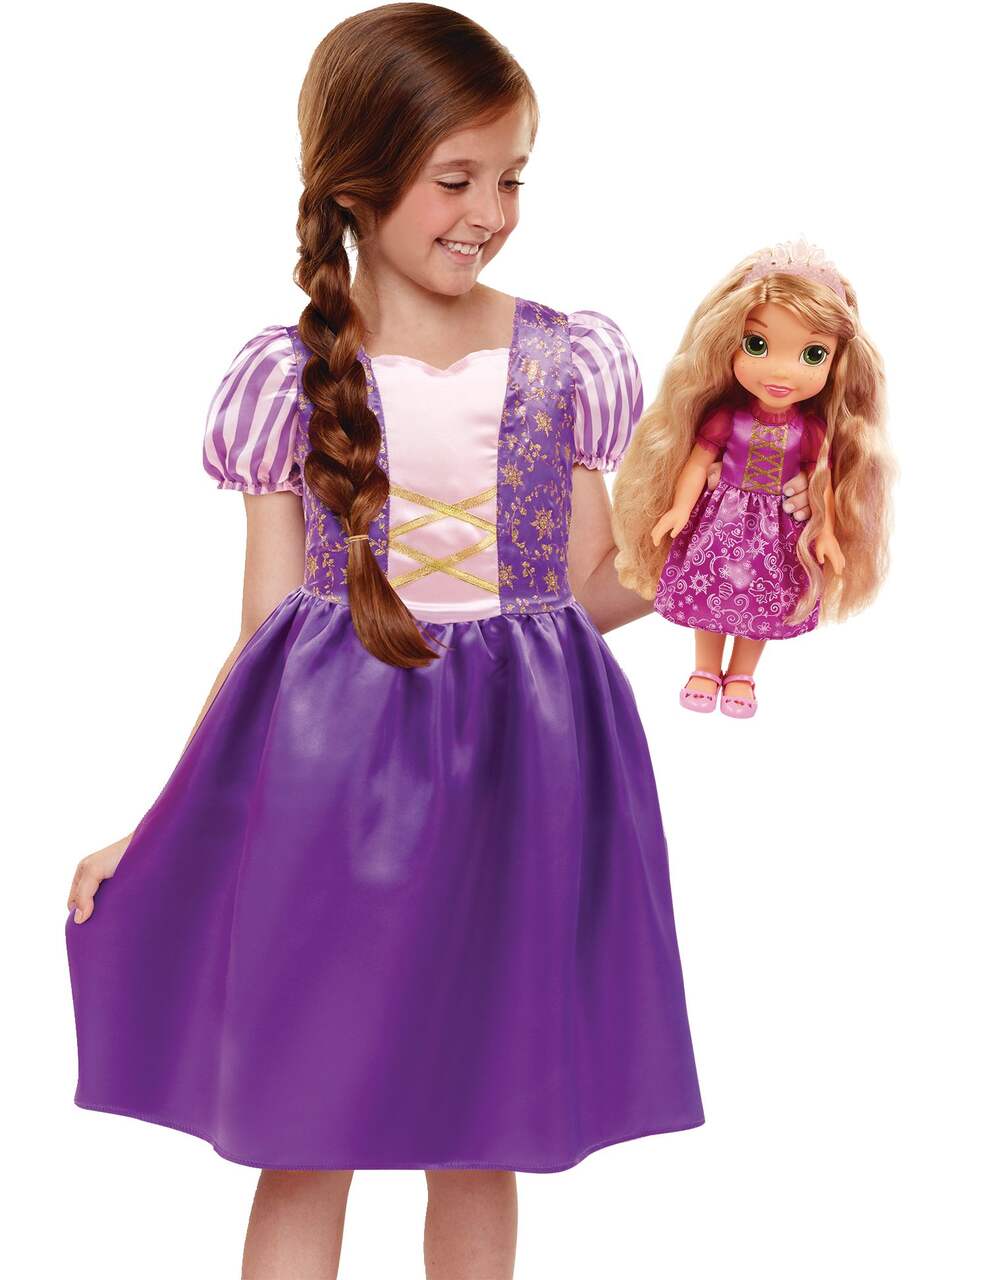 8pcs Disney Princess Action Figures Changé De Robe Poupée Enfants